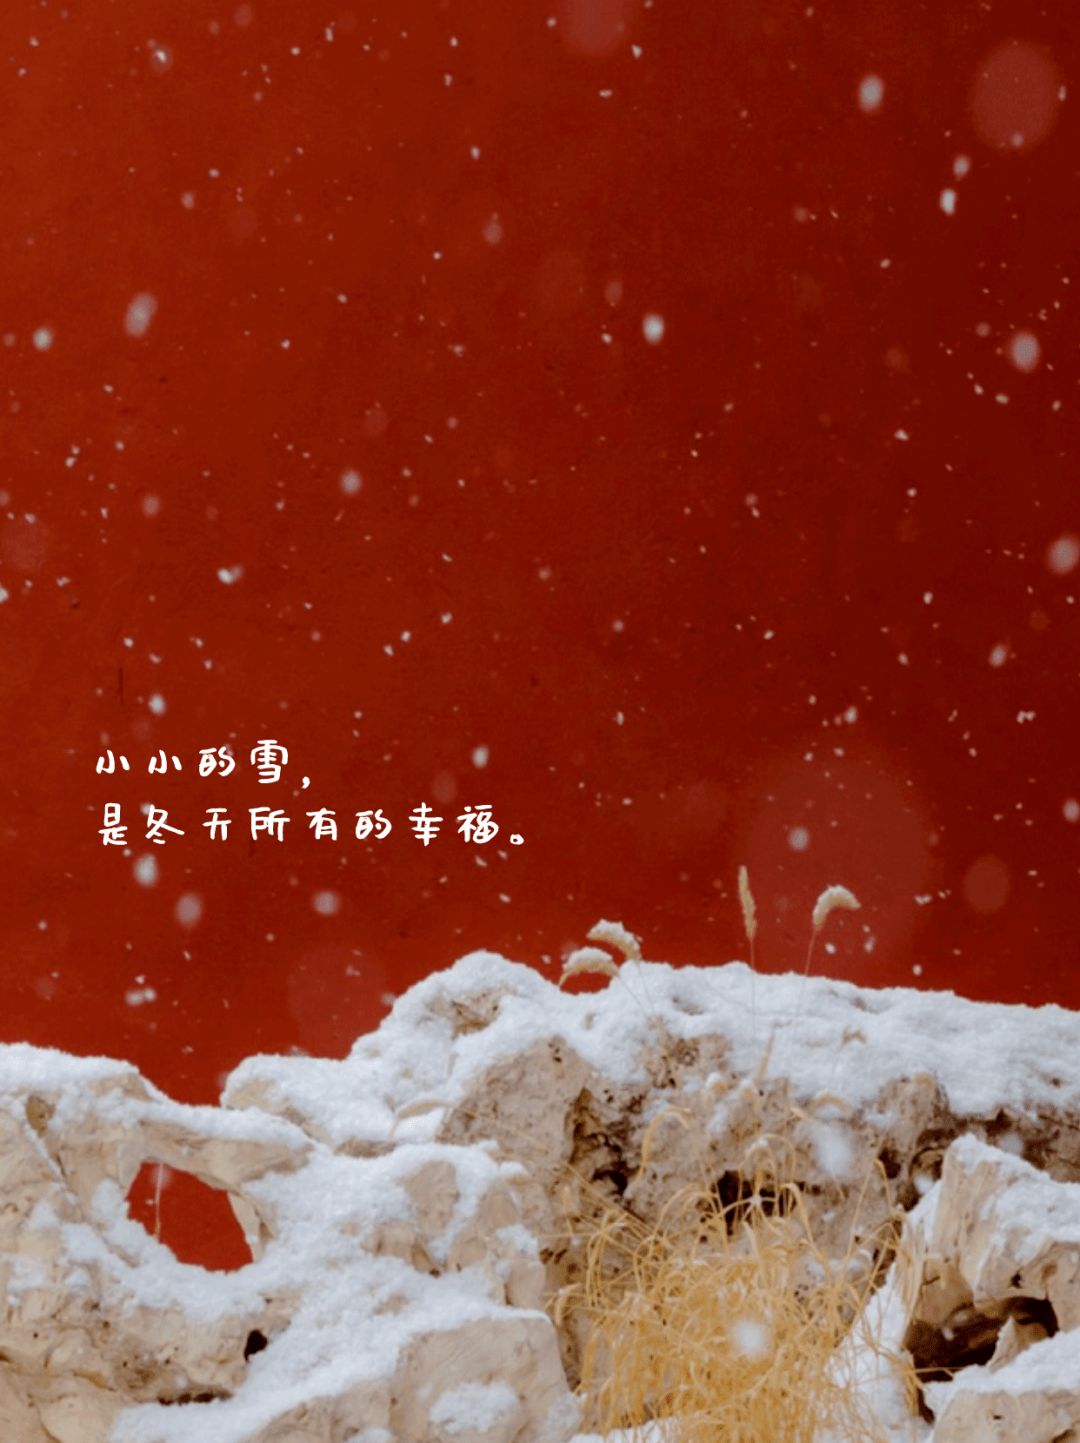 故宫雪景文案图片